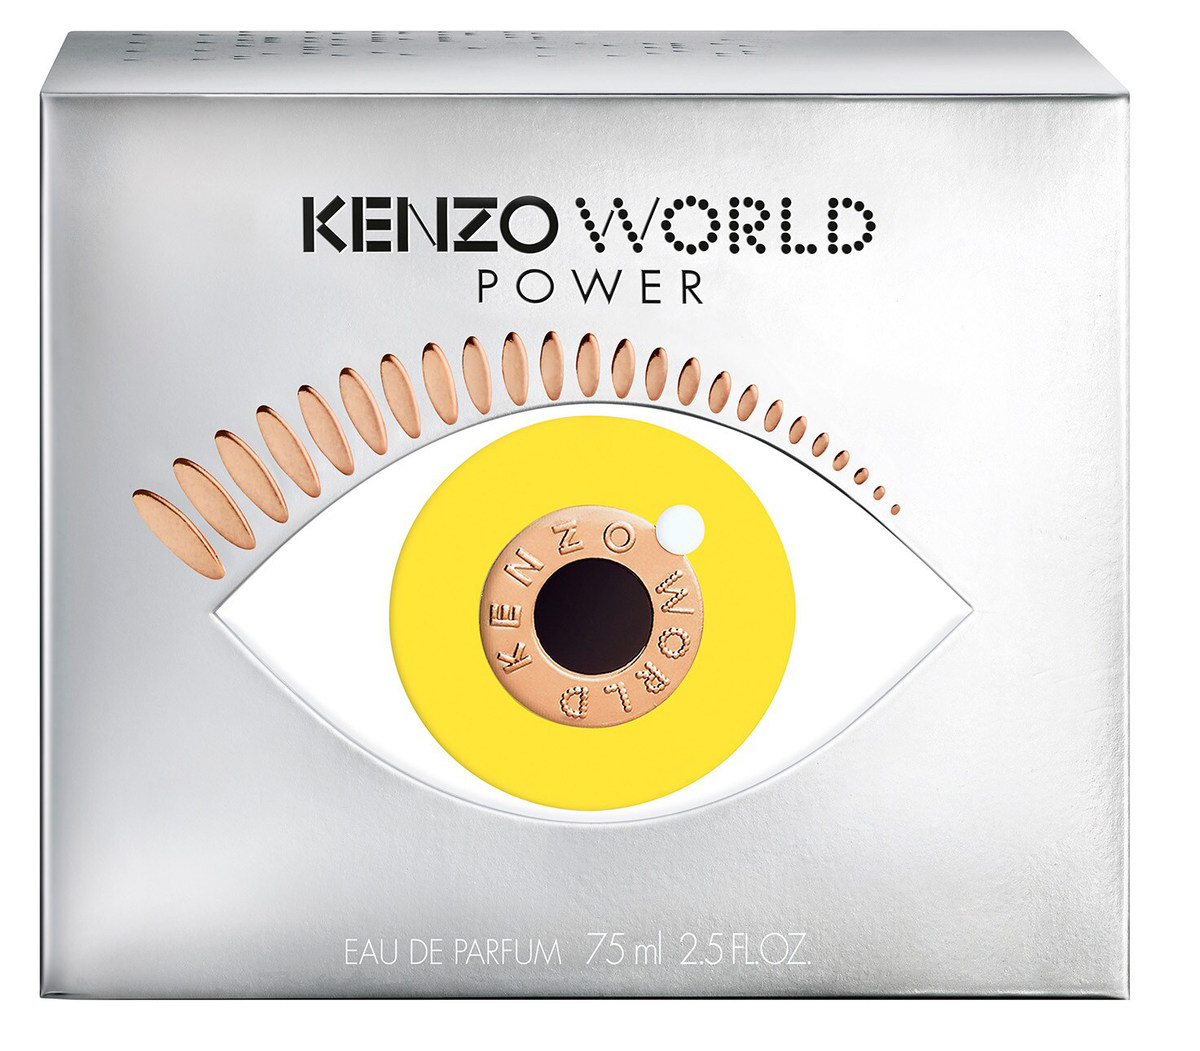 Kenzo - World Power Eau de Parfum (Eau de Parfum) » Reviews & Perfume Facts | Eau de Parfum